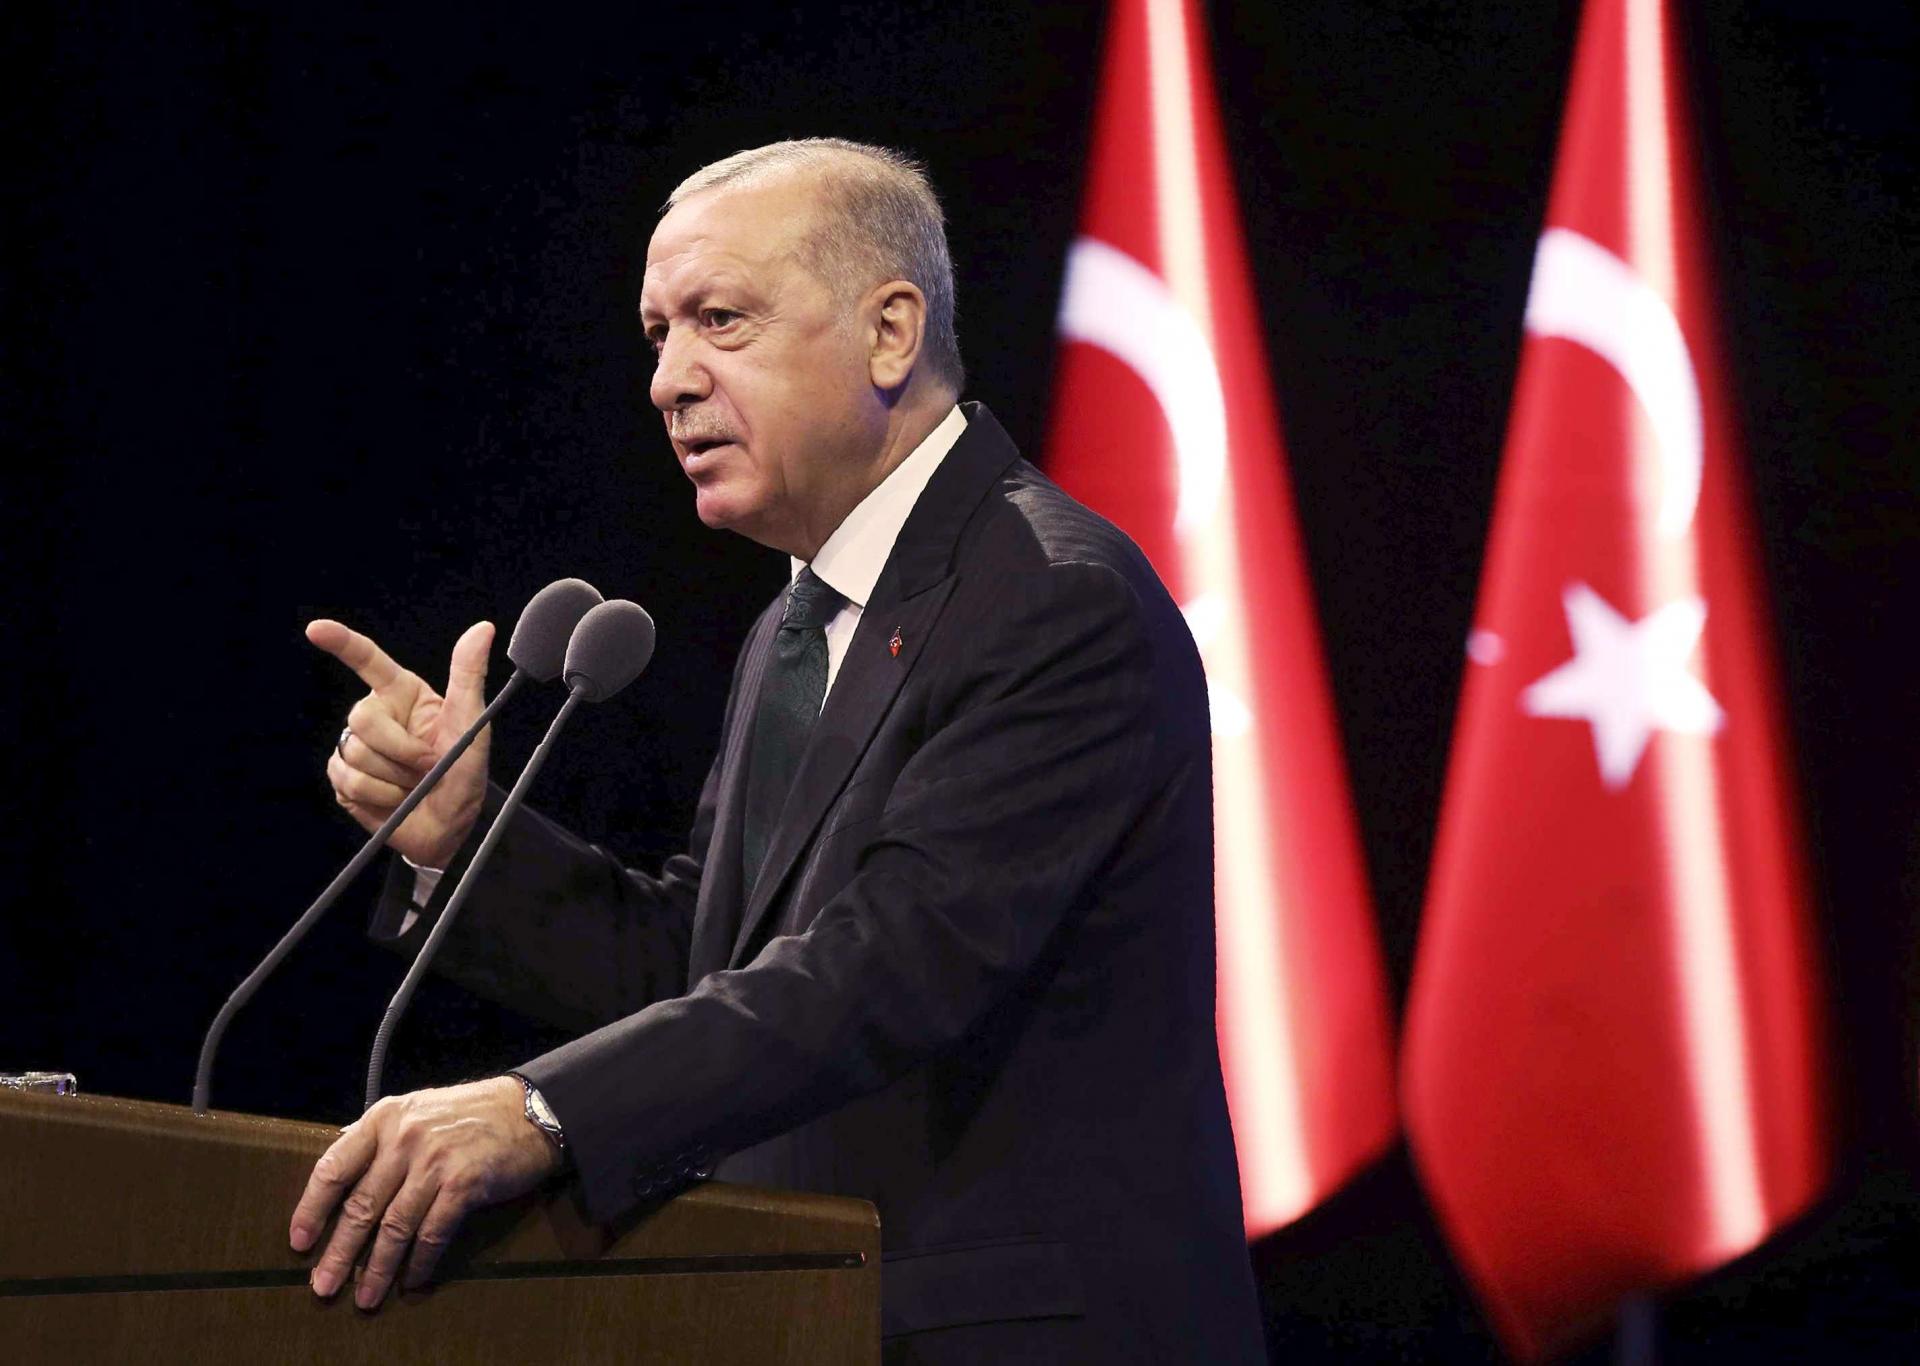 تركيا تعود لخطابها المتشدد بعد فترة من محاولة اردوغان التهدئة مع اوروبا